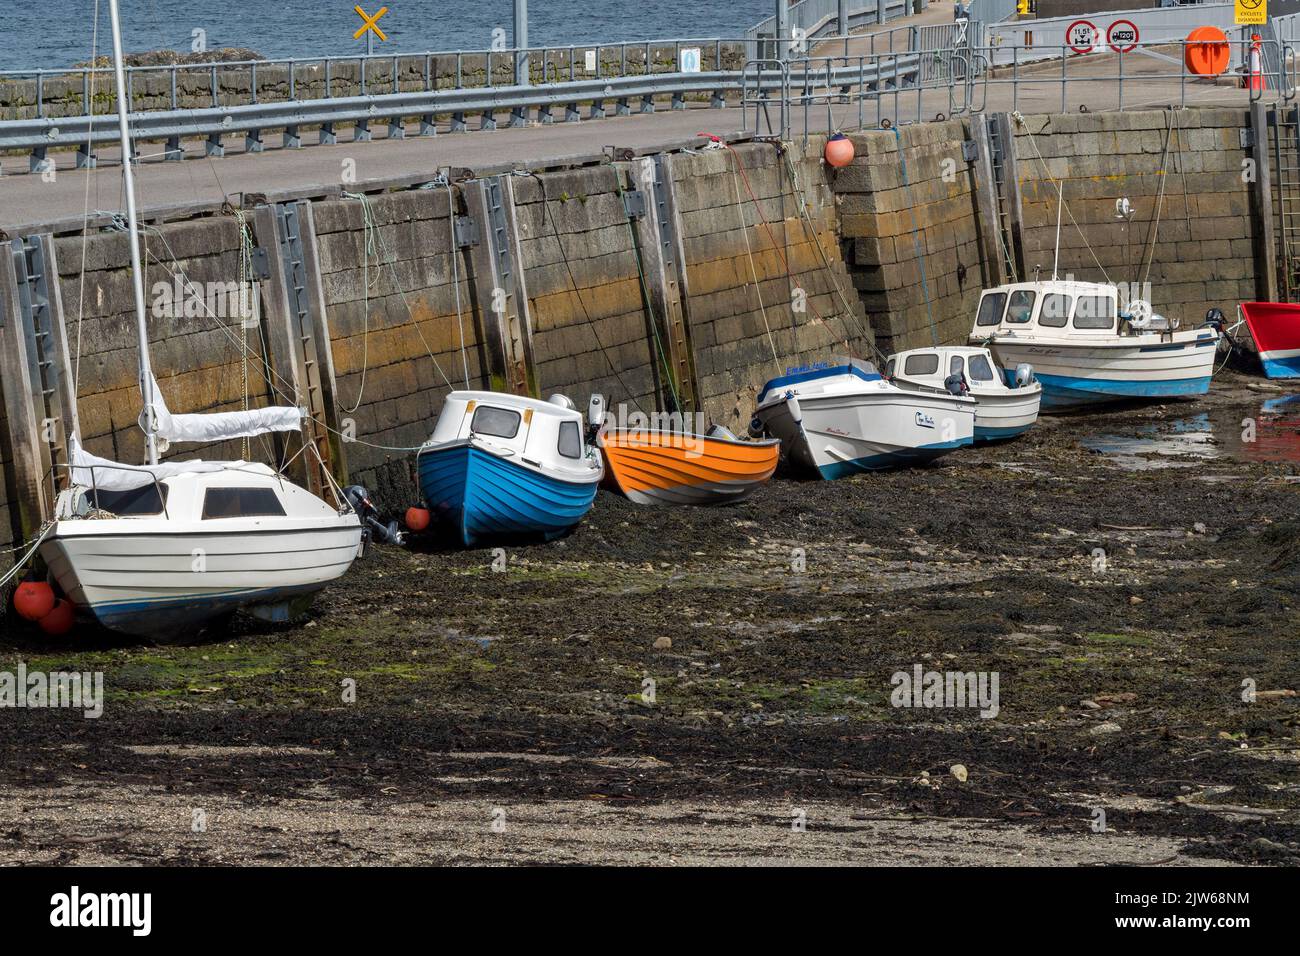 Rangée de petits bateaux à marée basse amarrés à côté de la jetée dans le port de Scalaasig sur l'île Hebridean isolée de Colonsay, Écosse, Royaume-Uni Banque D'Images